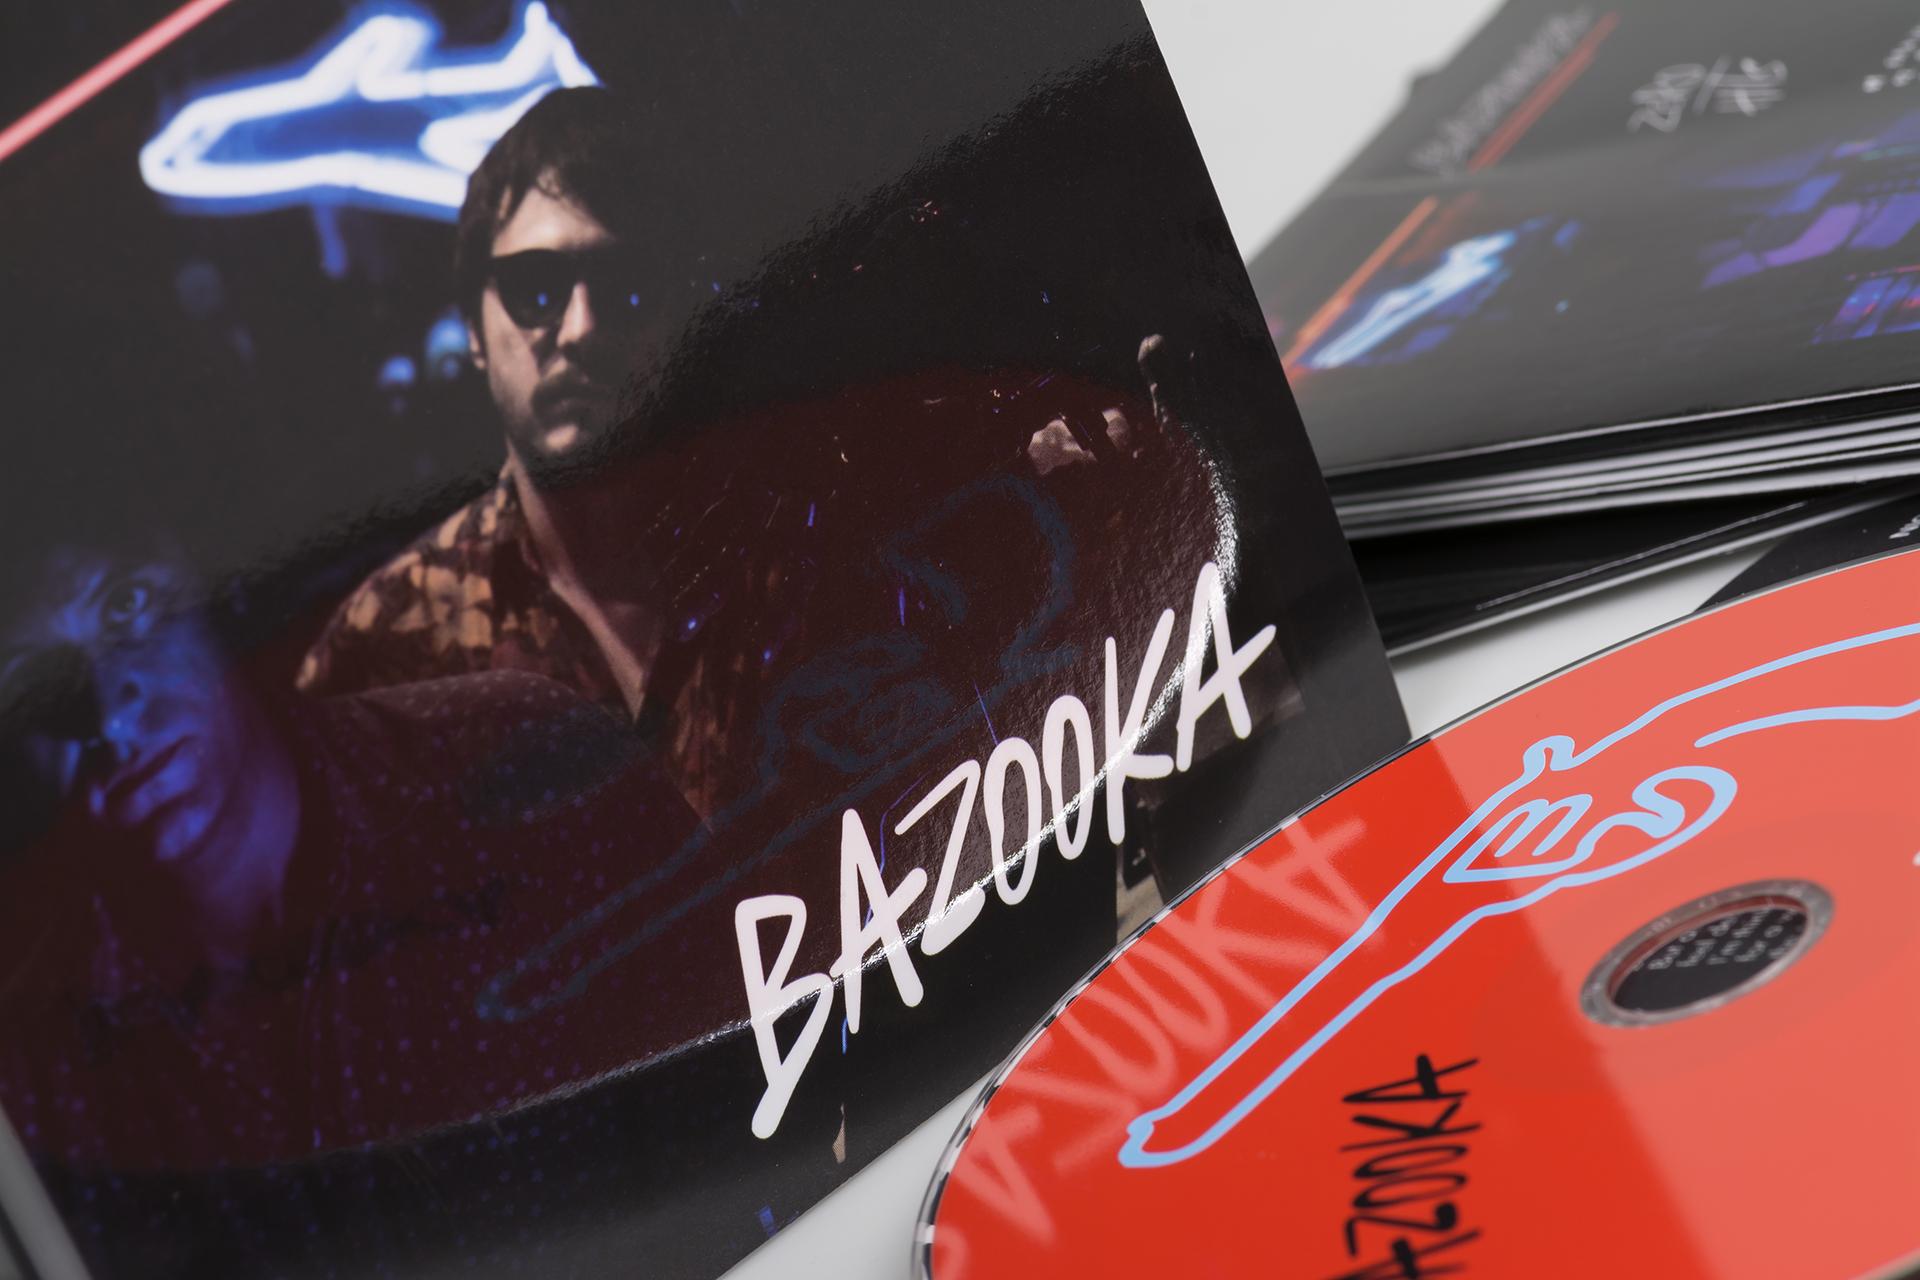 Bazooka - Zero Hits CD